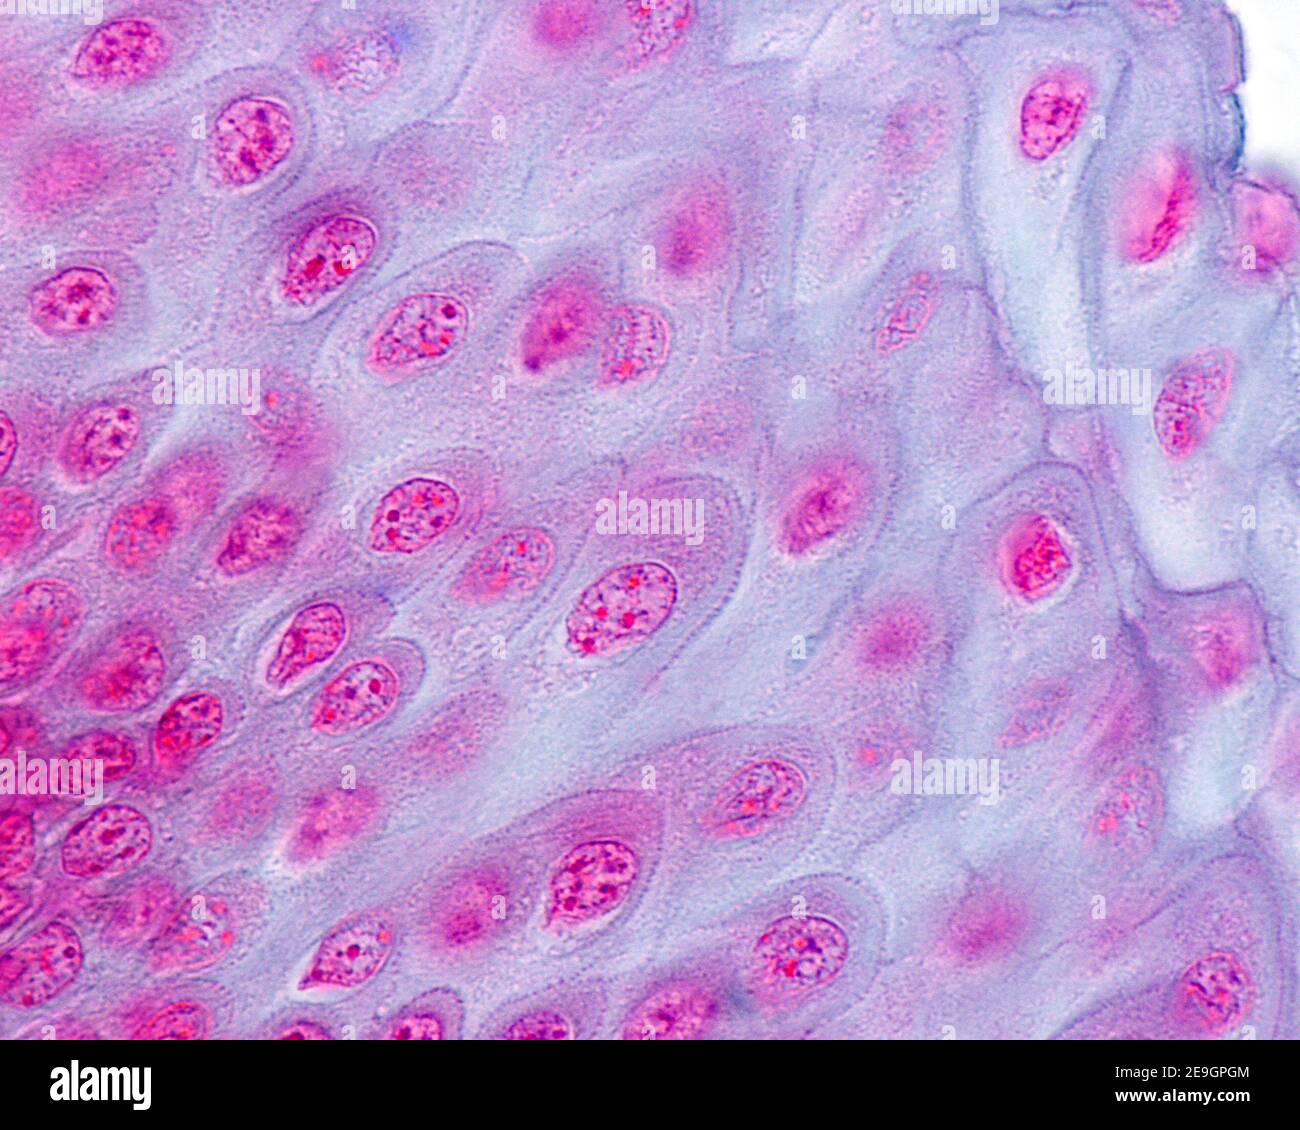 Micrographe à fort grossissement de l'épithélium stratifié squameux non kératinisé du oesophage montrant des desmosomes entre les cellules de la strate s. Banque D'Images